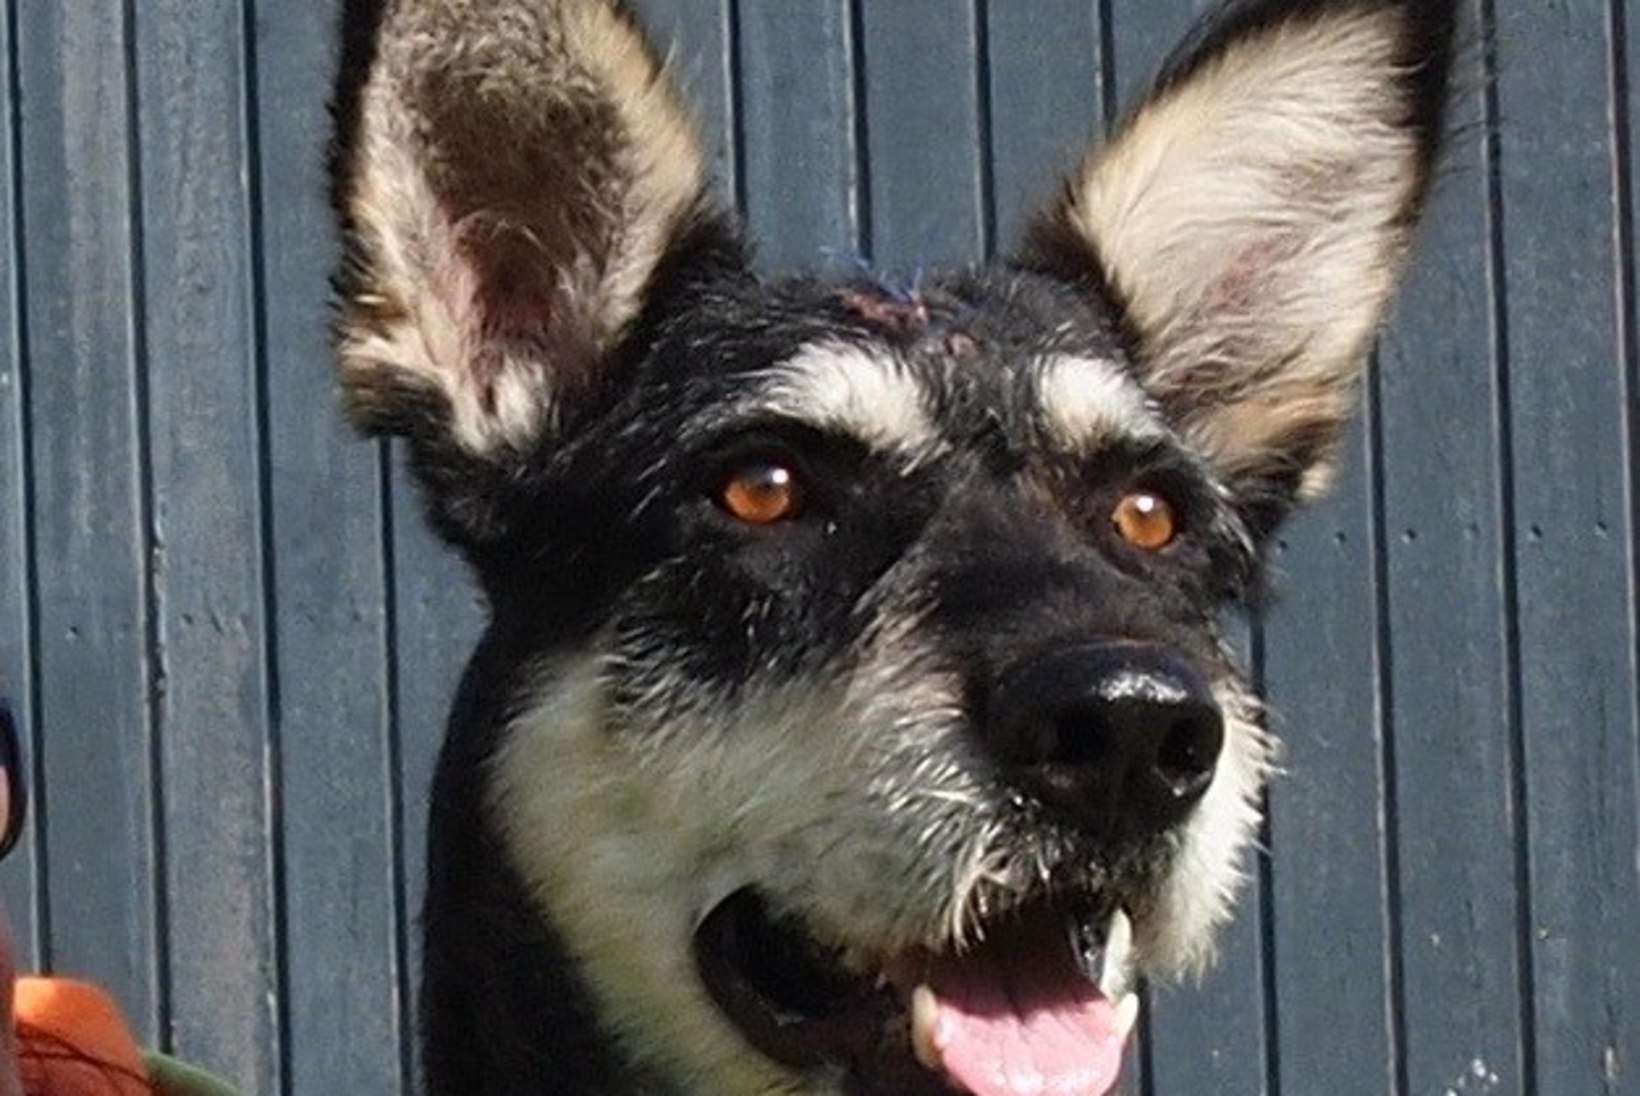 AU JA KIITUS: Rapla politseinikud päästsid ühe viimase aja julmima loomapiinamise ohvriks langenud koera